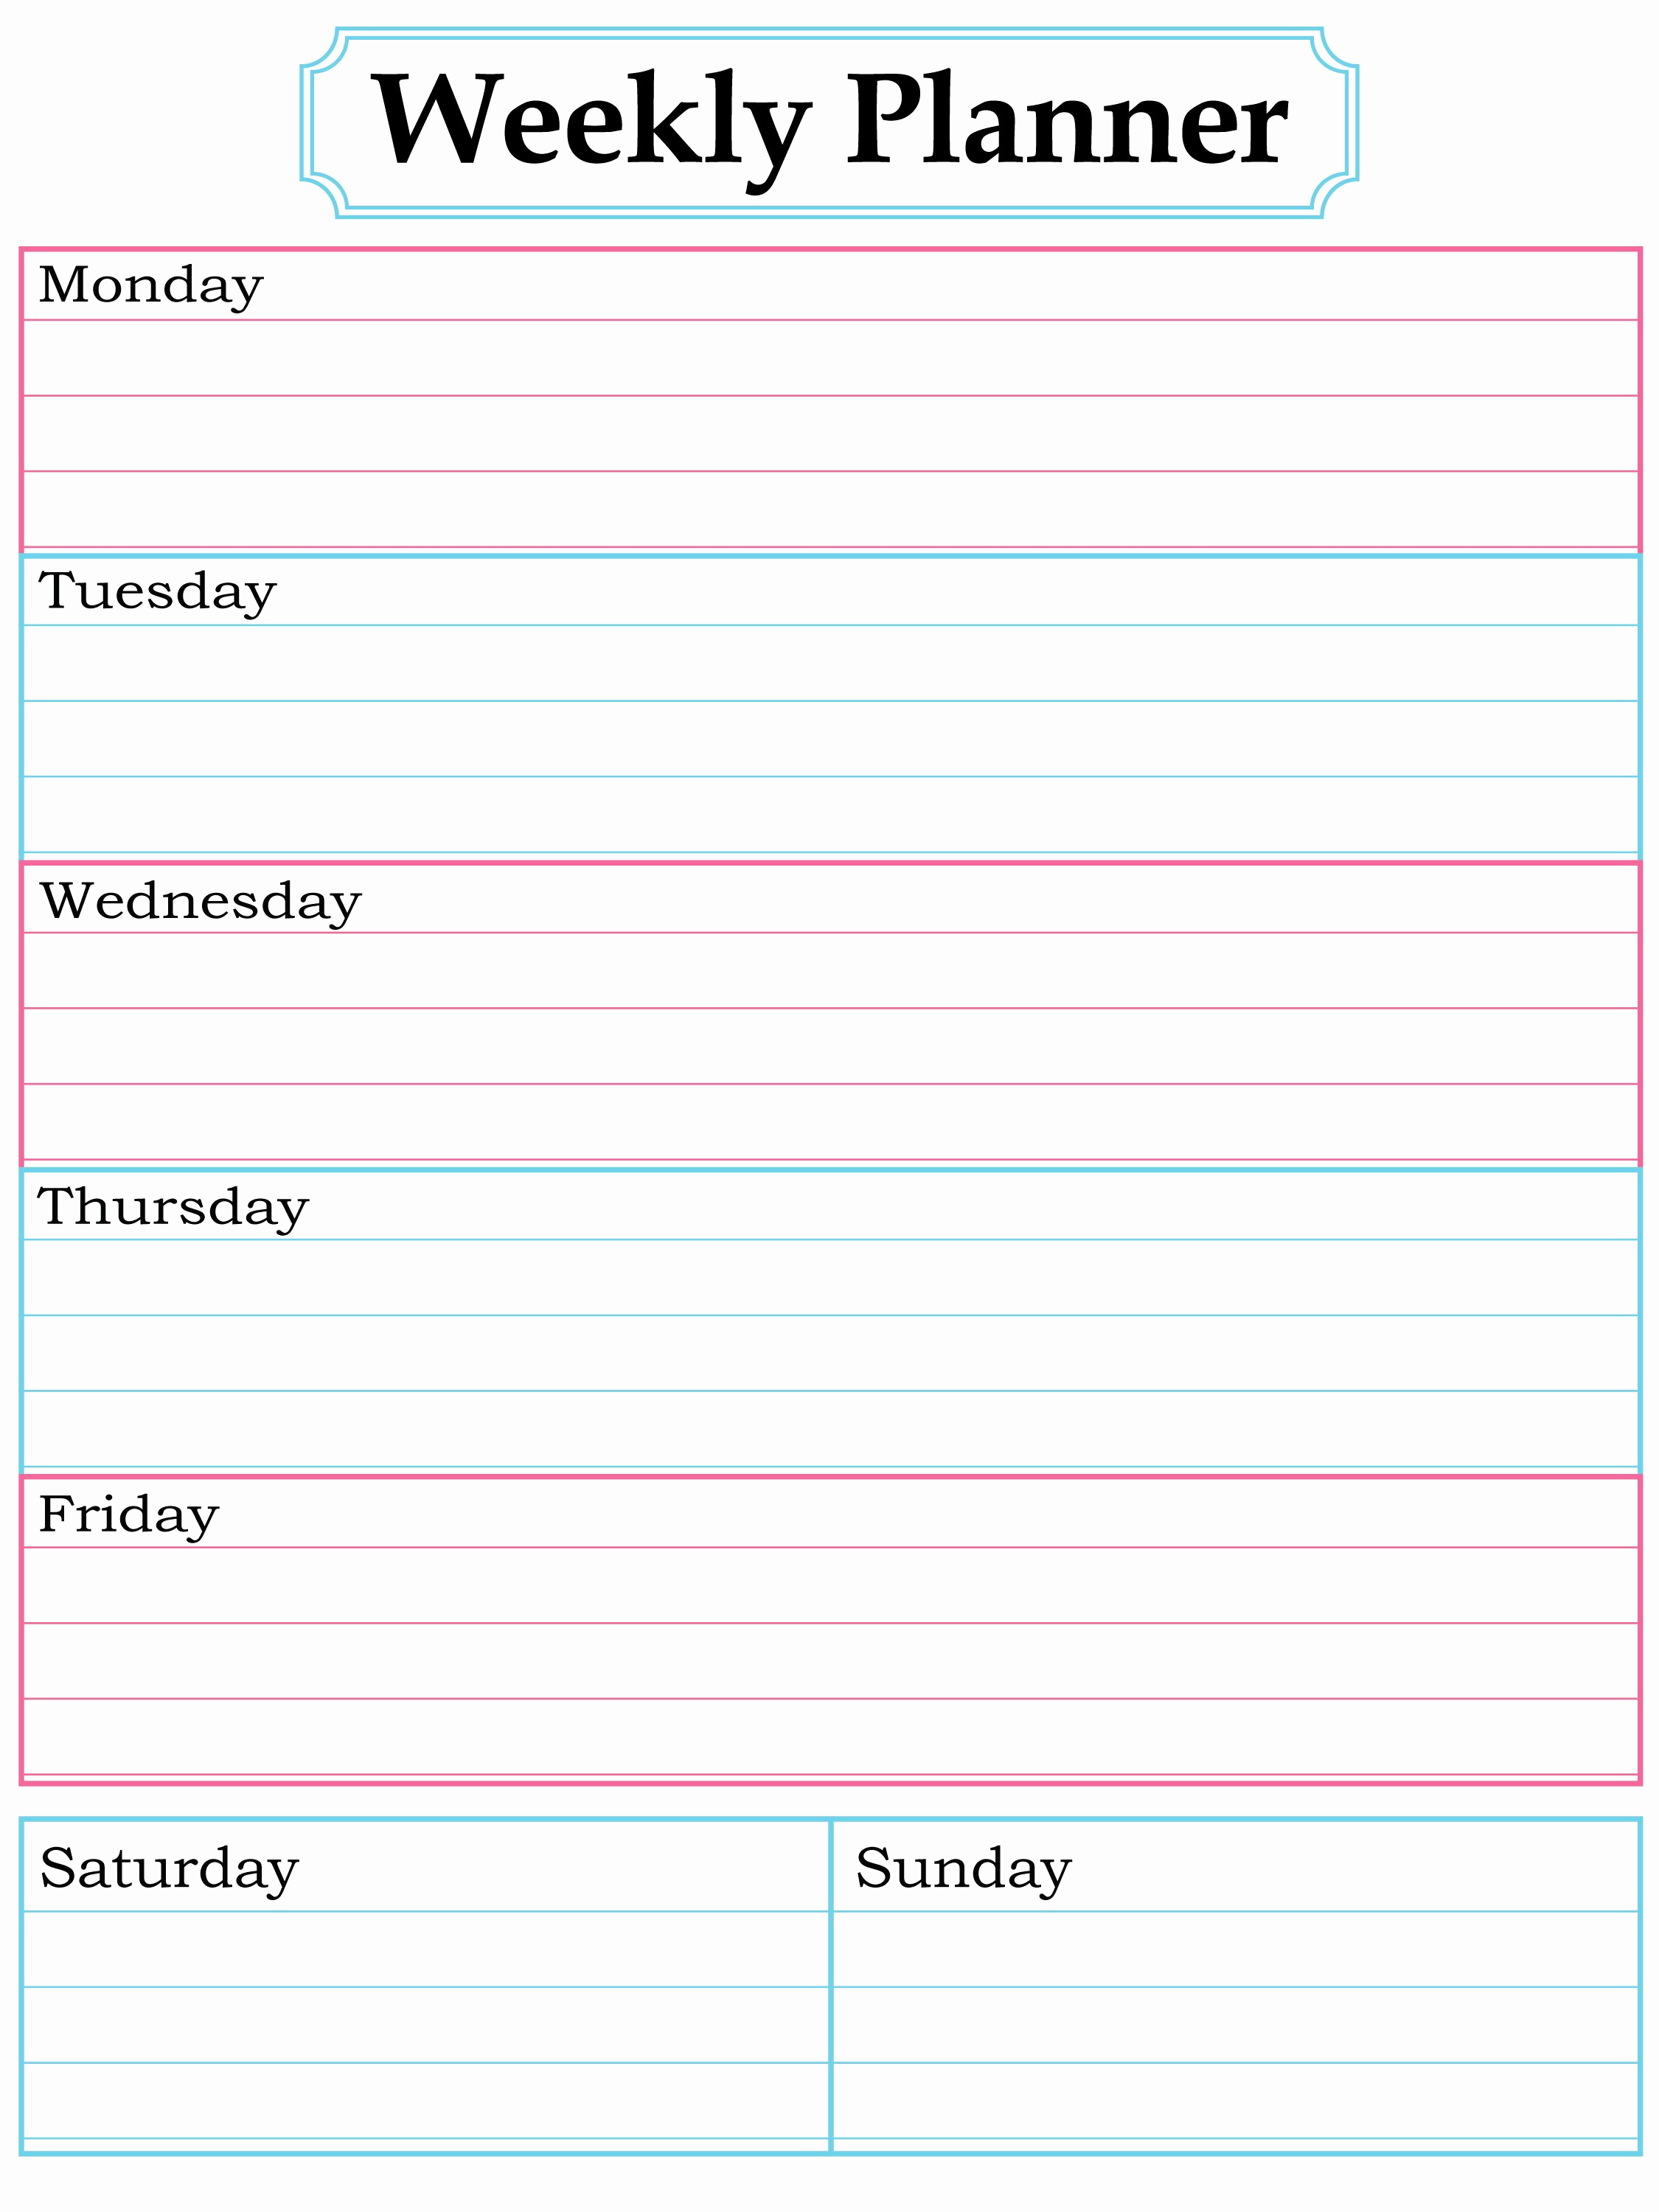 Printable Weekly Planner Template Inspirational Best 25 Weekly Planner Template Ideas On Pinterest